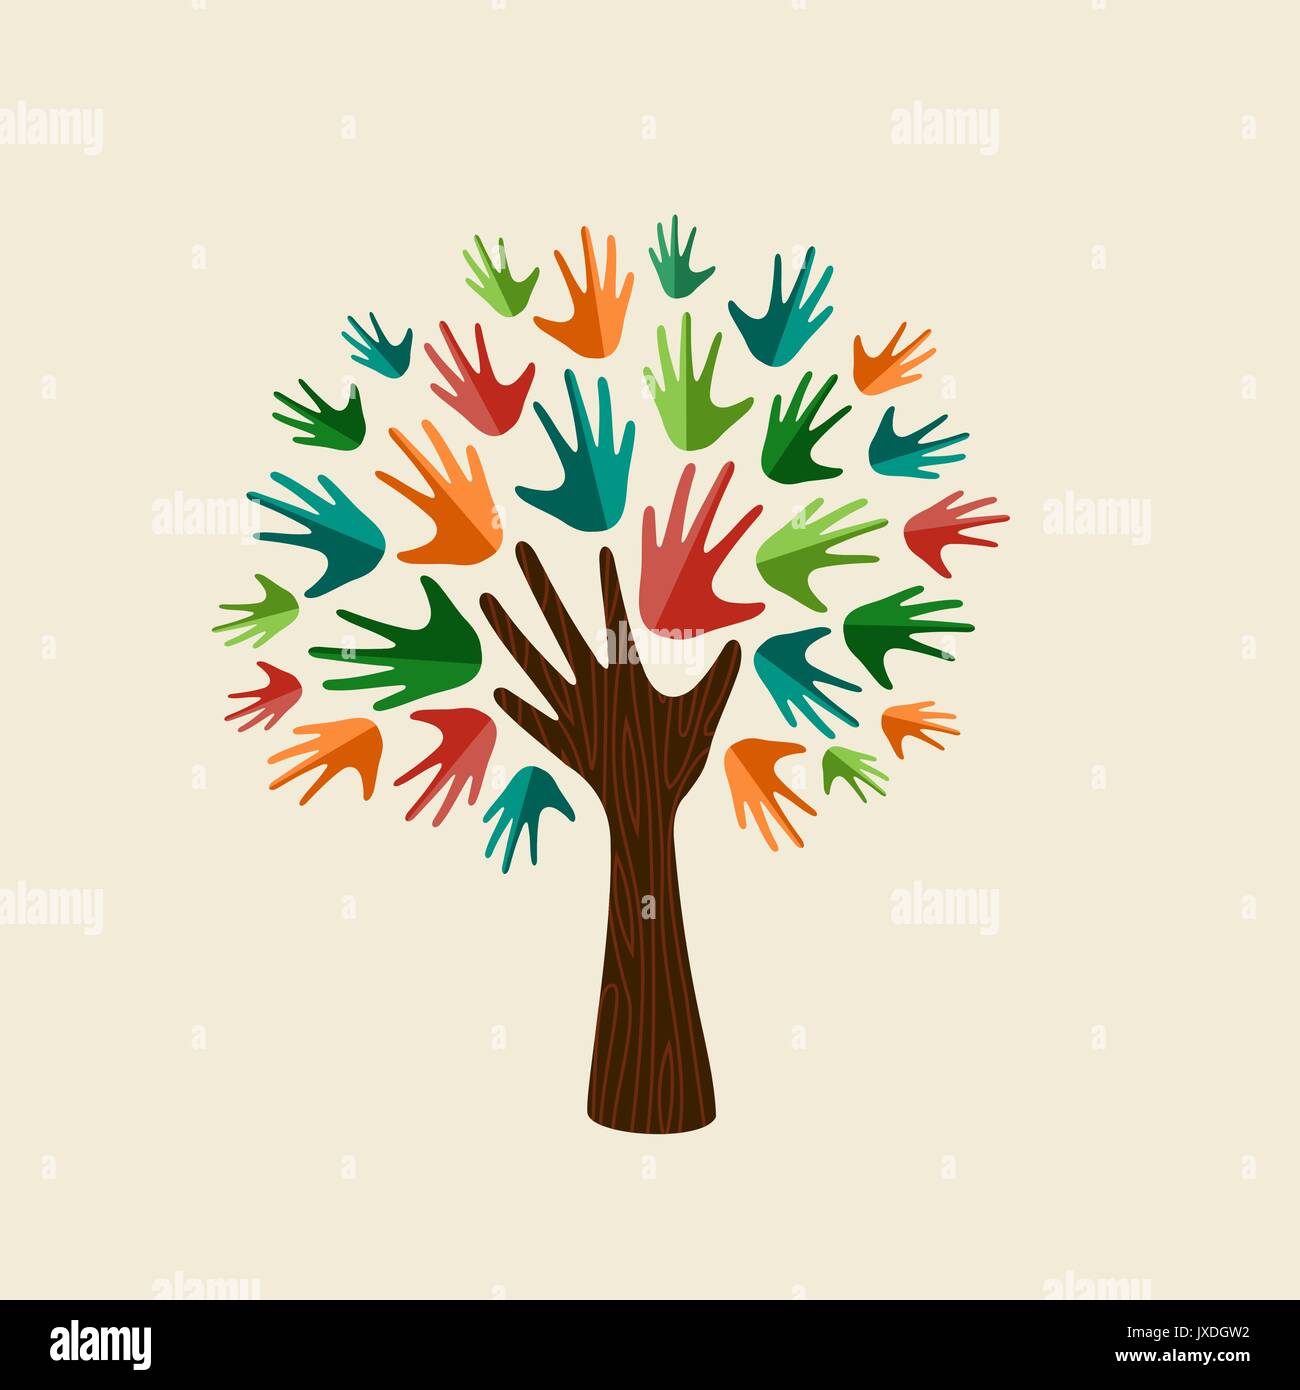 Baum Symbol mit bunten menschlichen Händen. Konzept Abbildung für die Organisation zu helfen, umwelt Projekt oder soziale Arbeit. EPS 10 Vektor. Stock Vektor